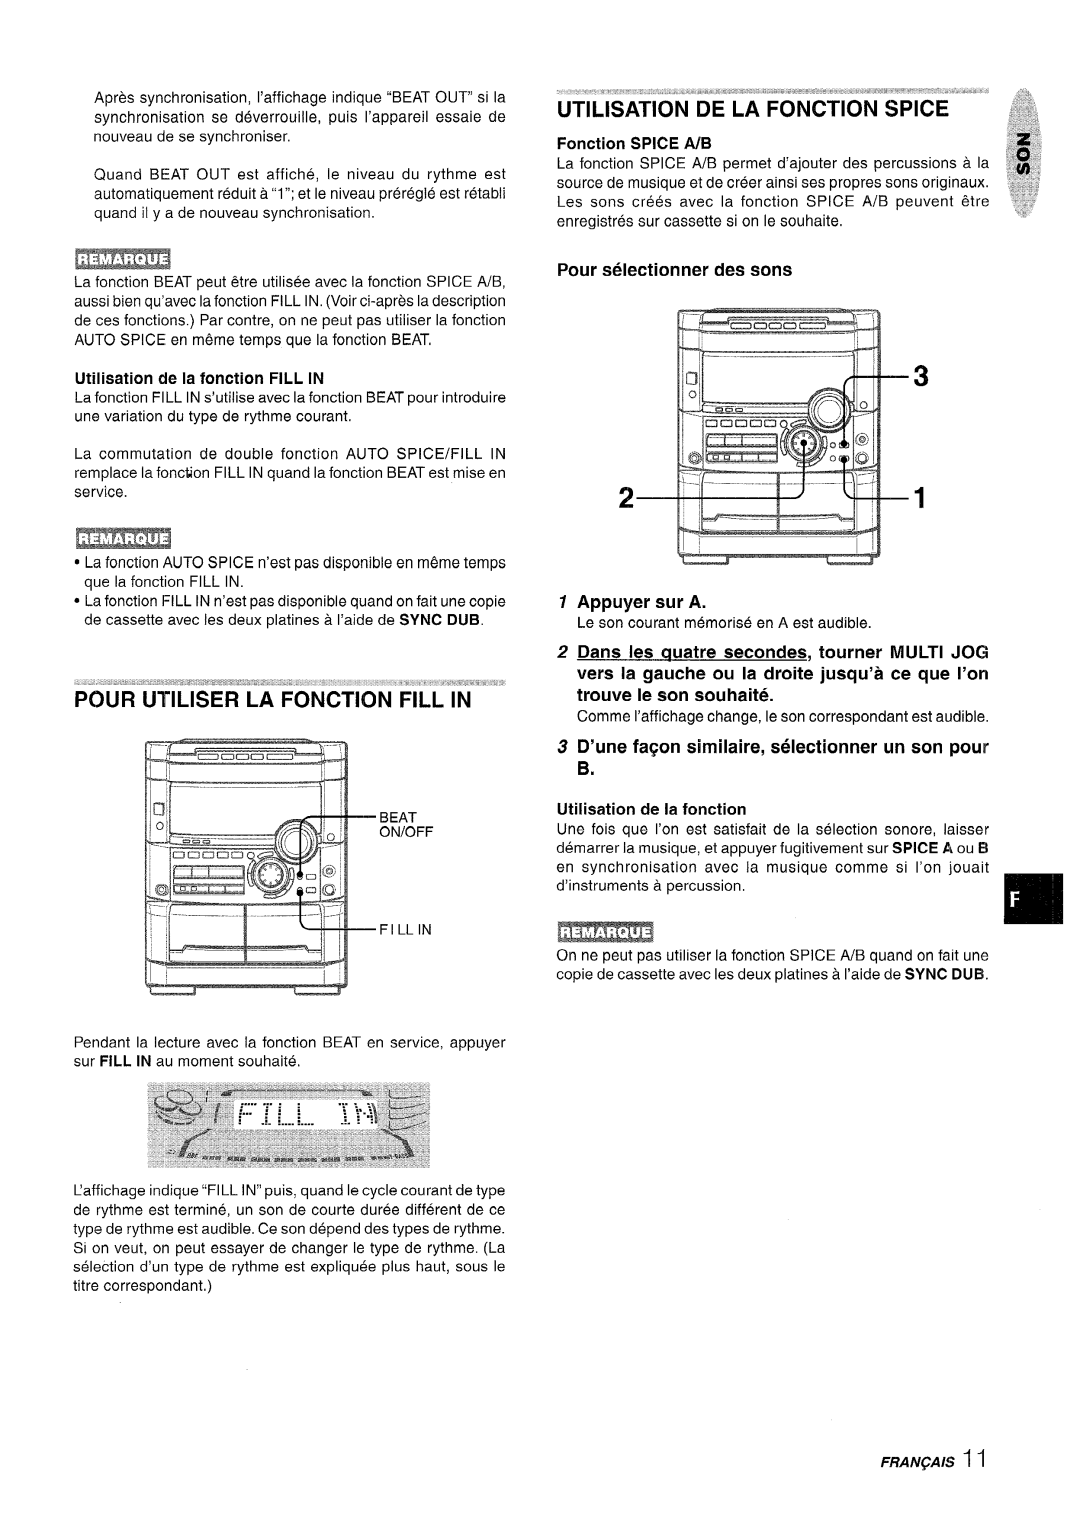 Sony NSX-A767 manual I q ~ FILLIN, Pour Utiliser La Fonction Fill In, Pour selectionner des sons, Appuyer sur A 